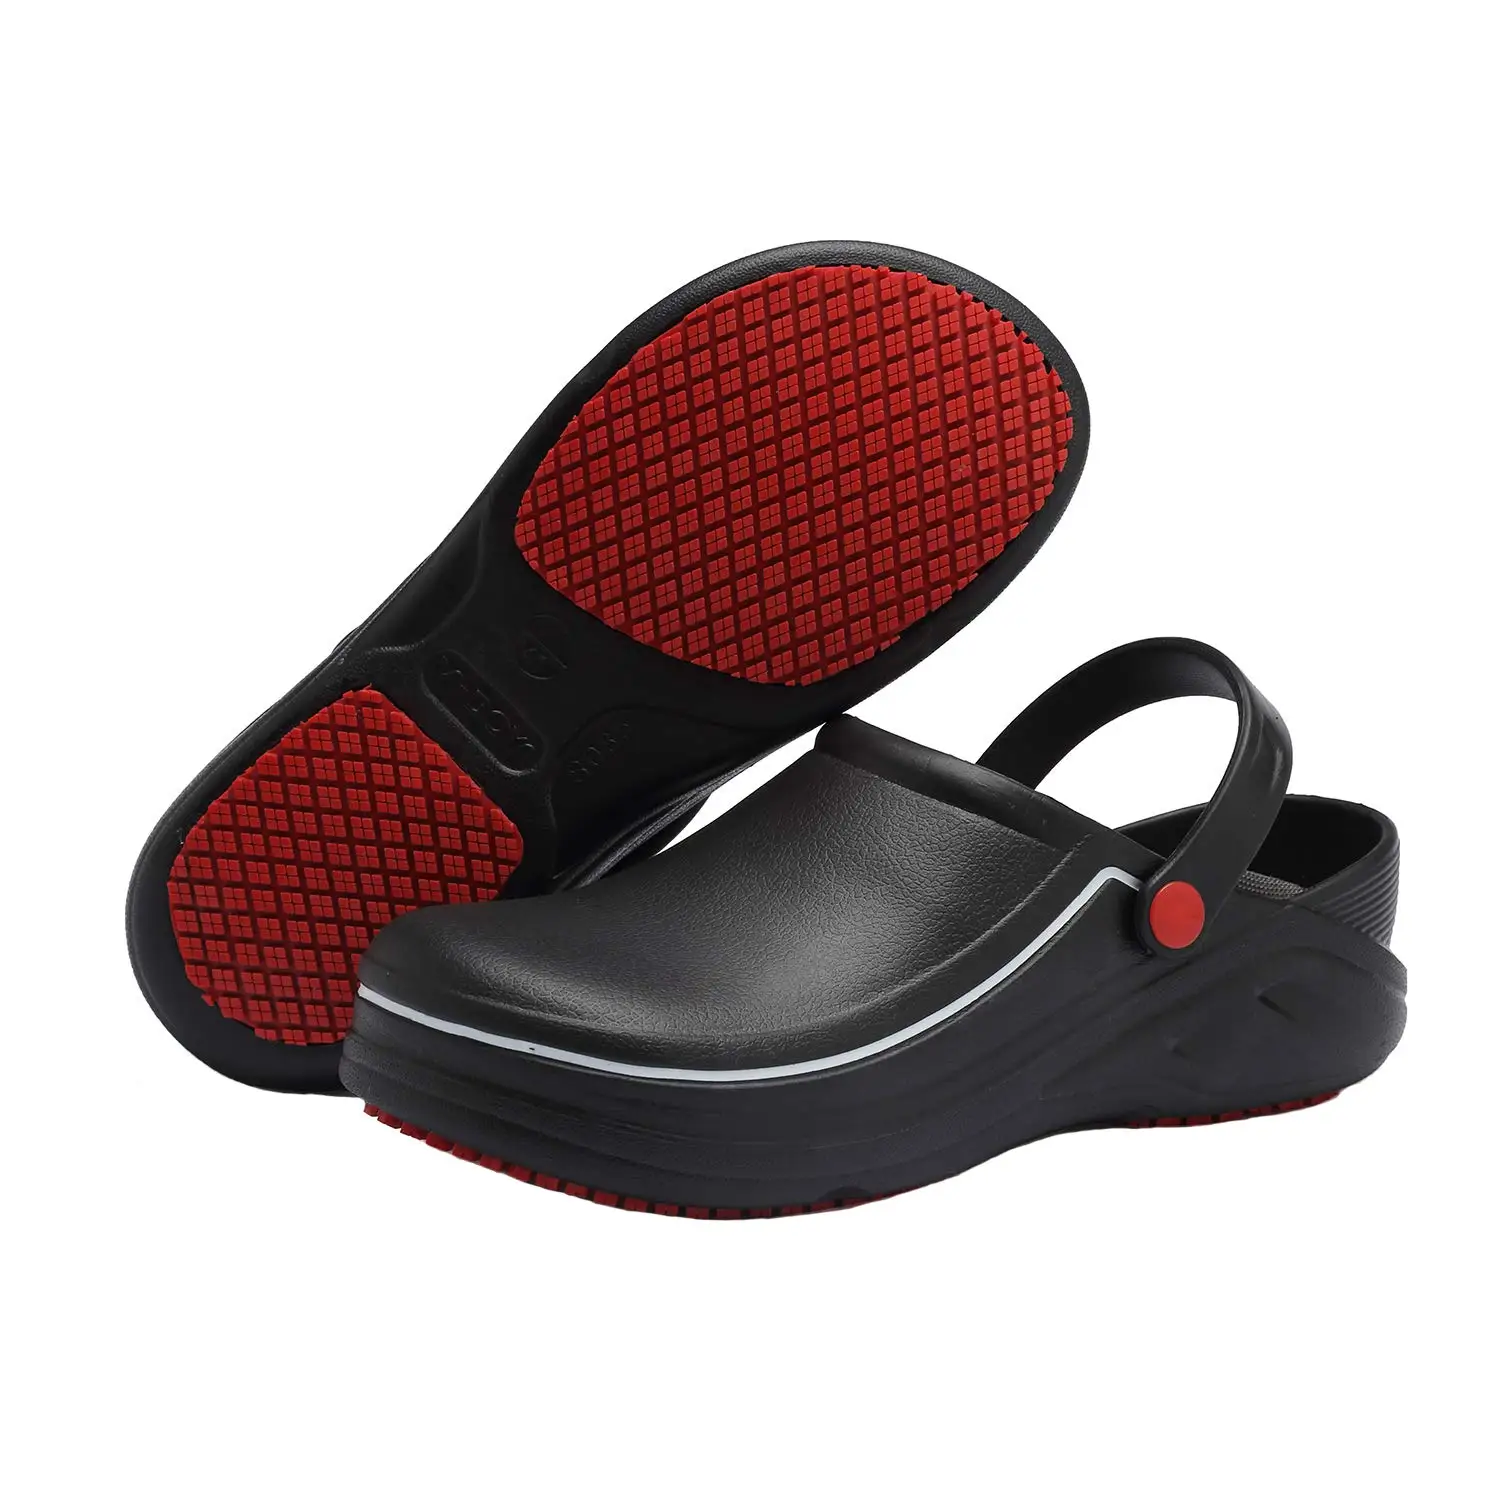 YEINSHAARS EVA/Высококачественная обувь повара, Нескользящие водонепроницаемые маслостойкие кухонные рабочие туфли для шеф-повара, домашние тапочки - Цвет: Black